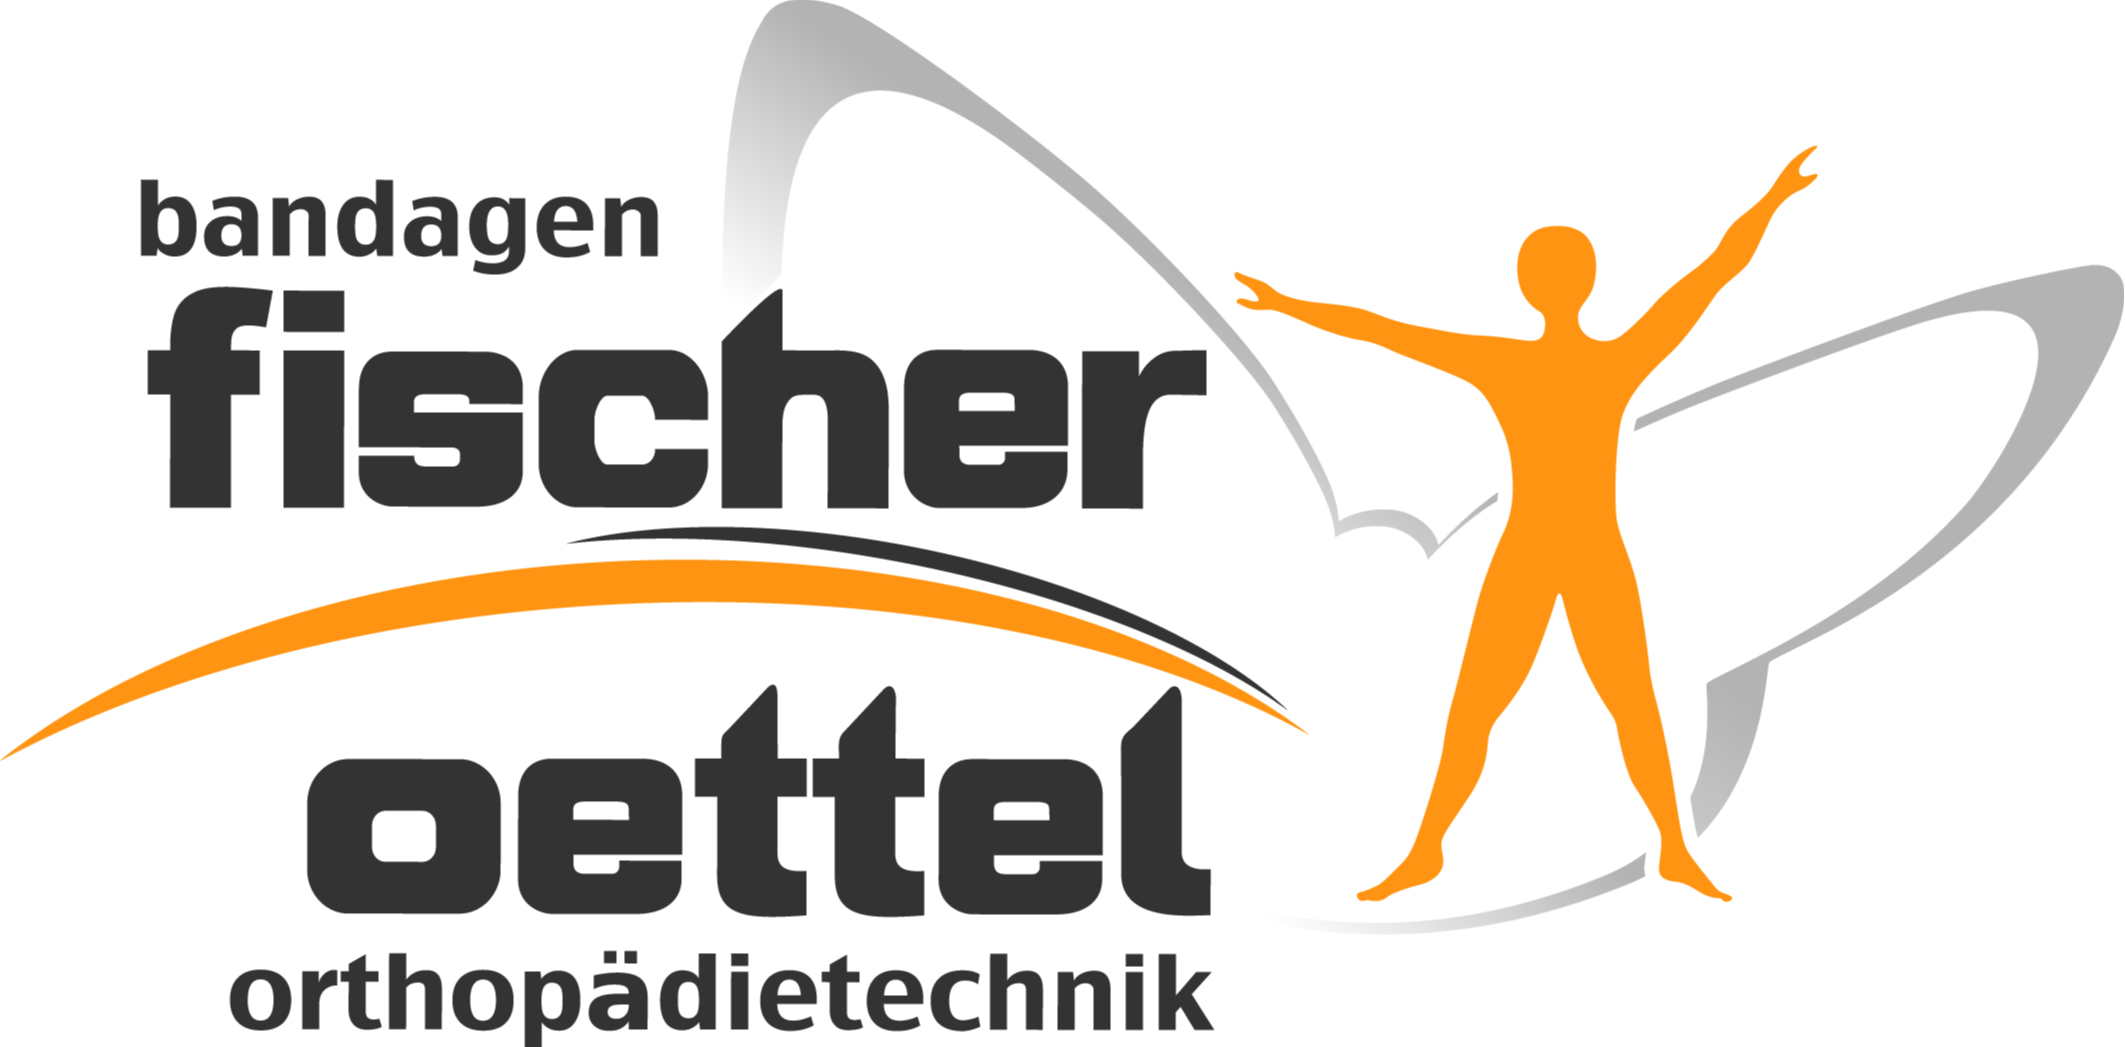 Logo der Firma Bandagen Fischer Oettel Orthopädietechnik aus Bad Elster